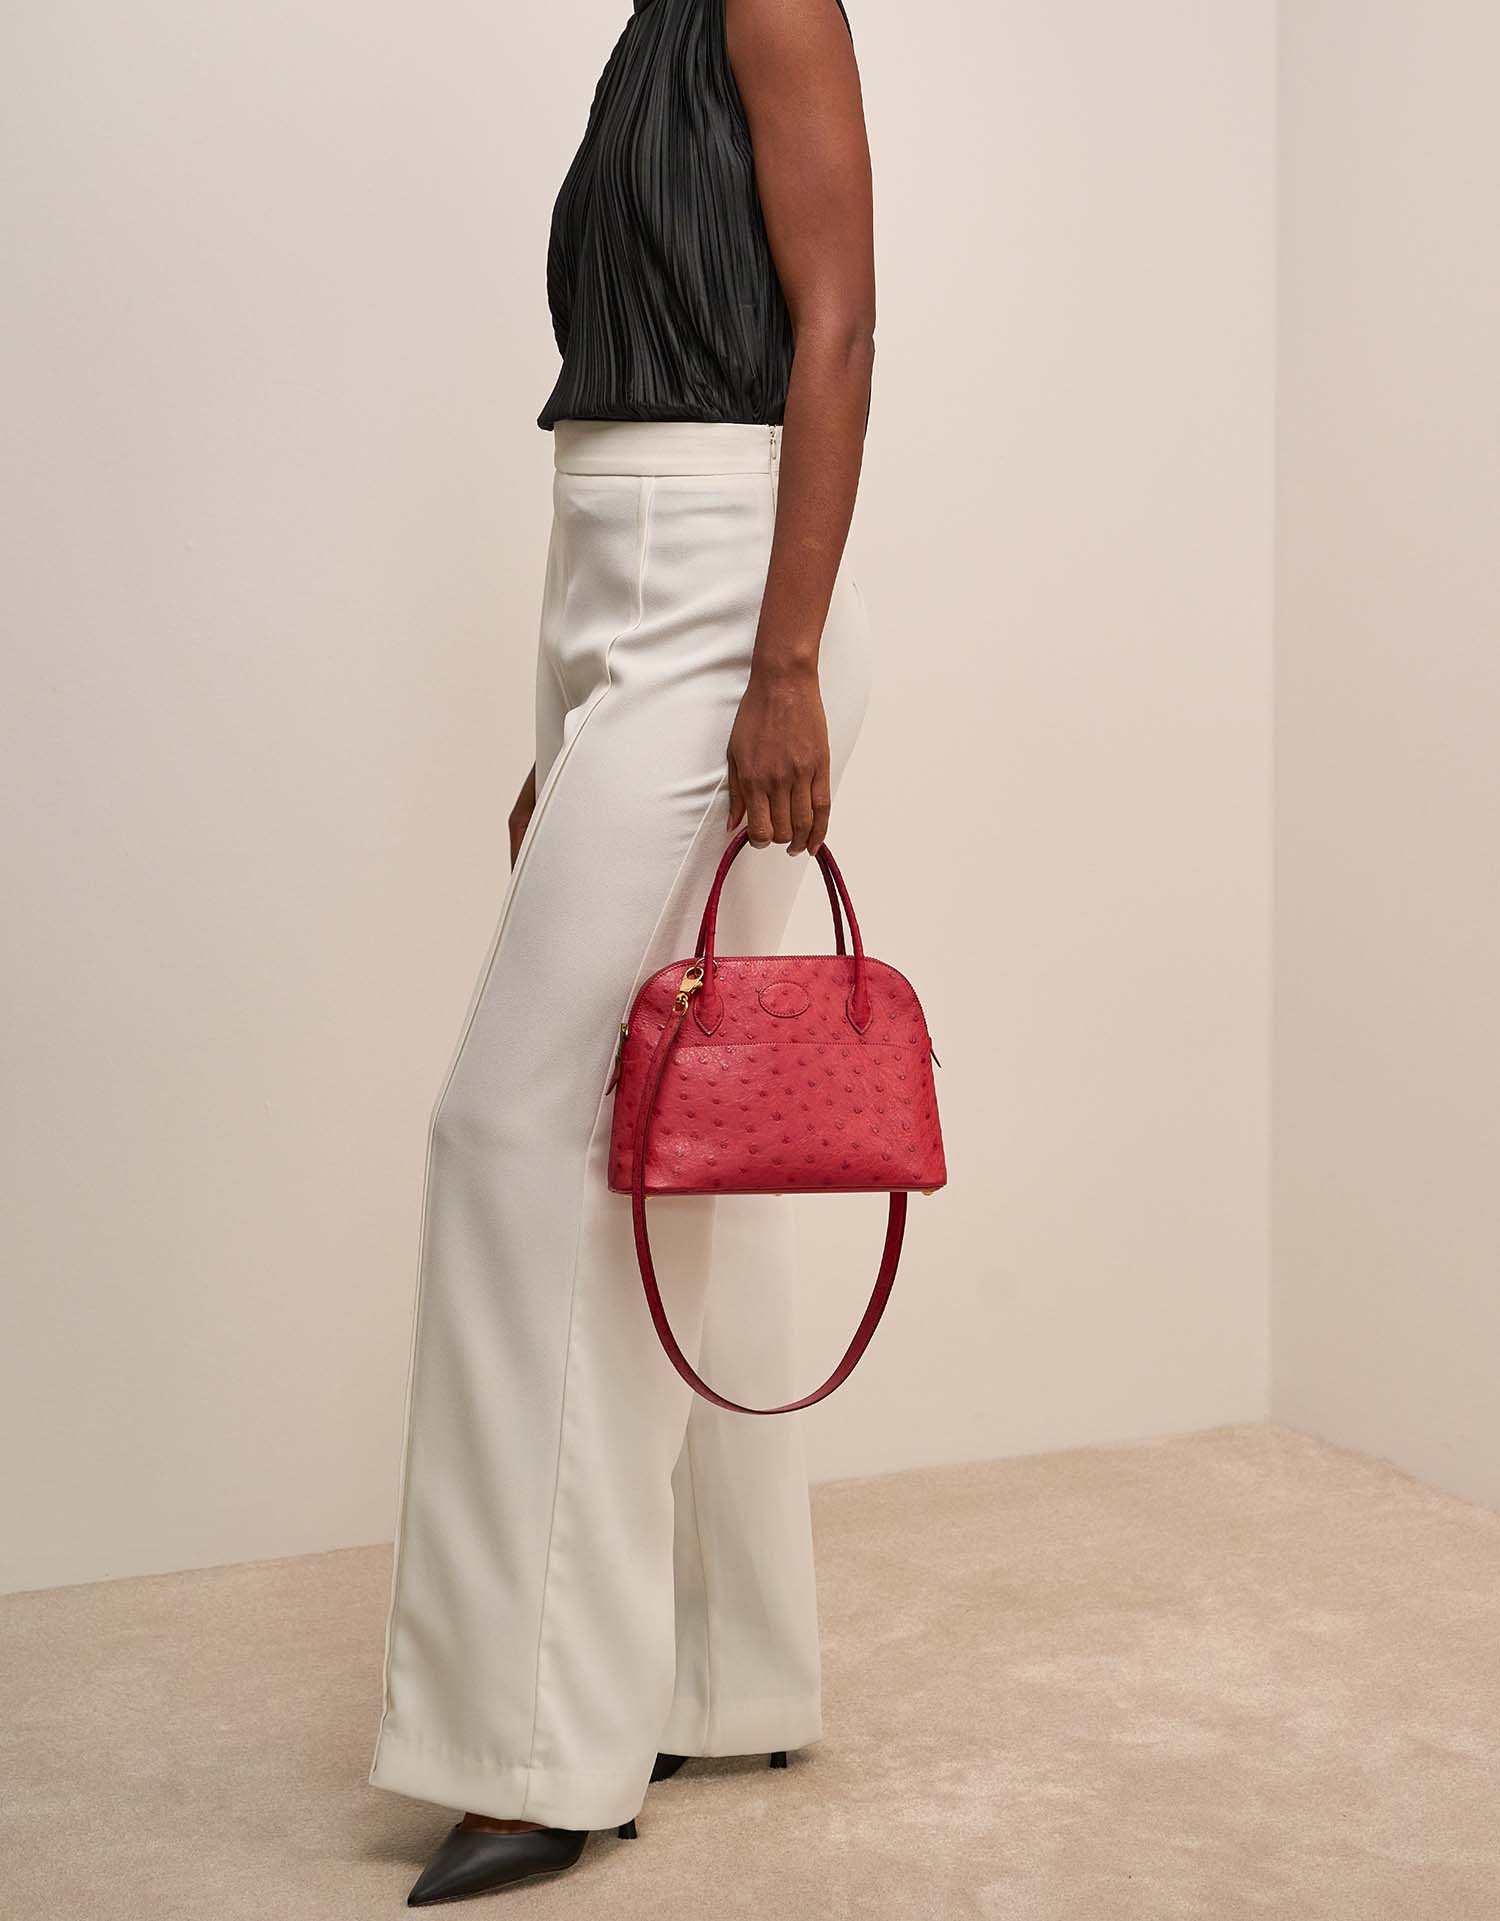 Hermès Bolide 27 RougeVif auf Model | Verkaufen Sie Ihre Designertasche auf Saclab.com